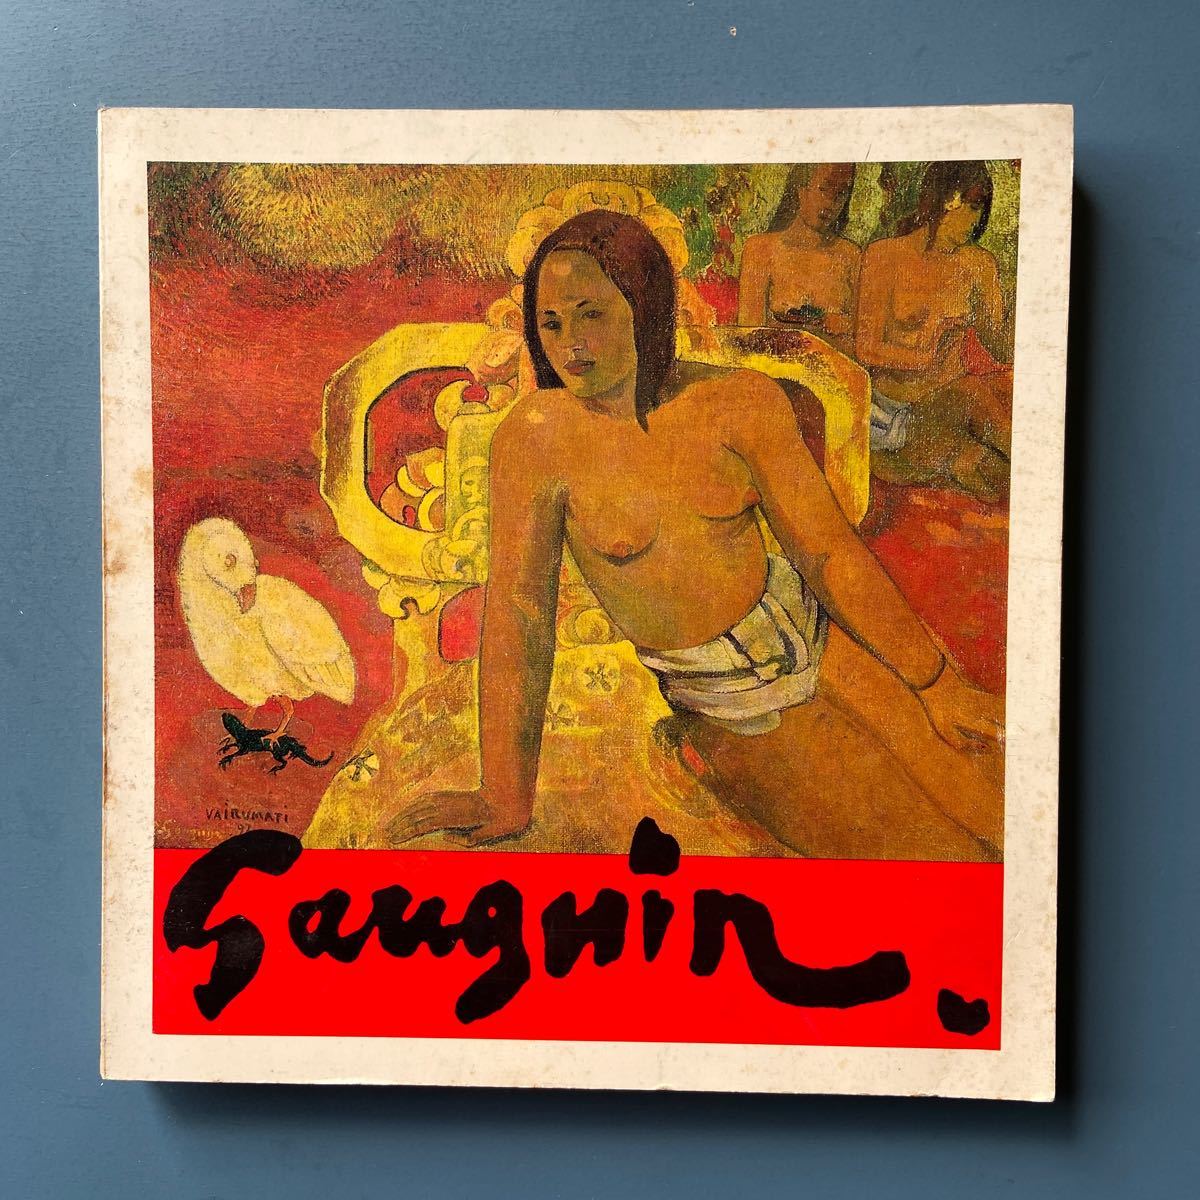 Katalog der Gauguin-Ausstellung: Die Geheimnisse Tahitis und der Maler der Sonne 1969, Malerei, Kunstbuch, Sammlung, Katalog